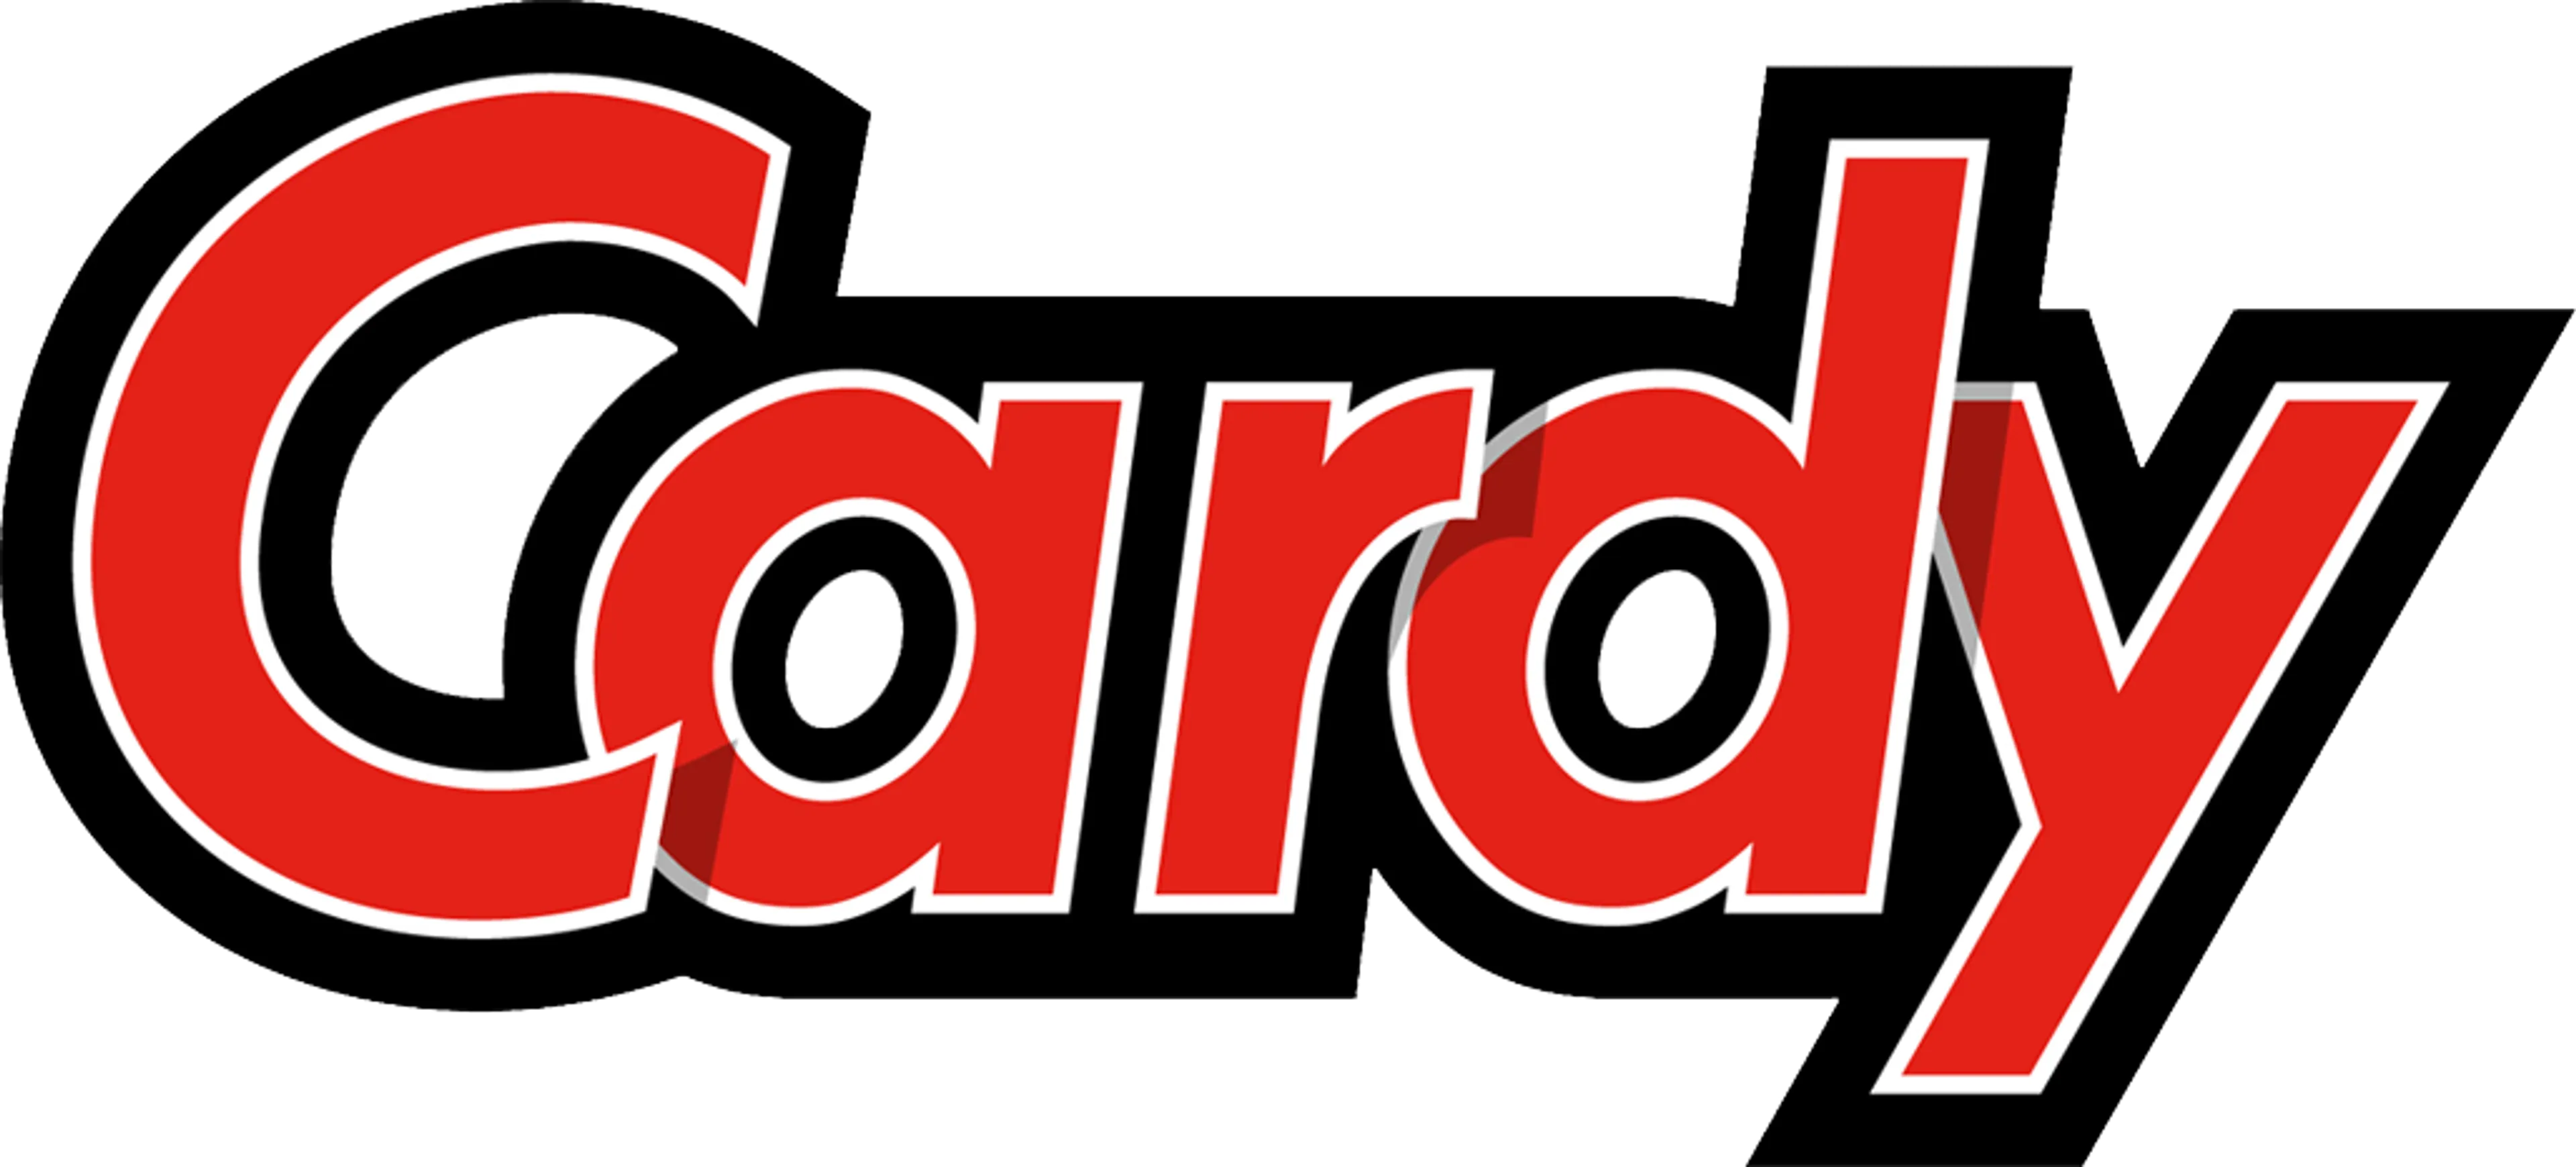 CARDY logo